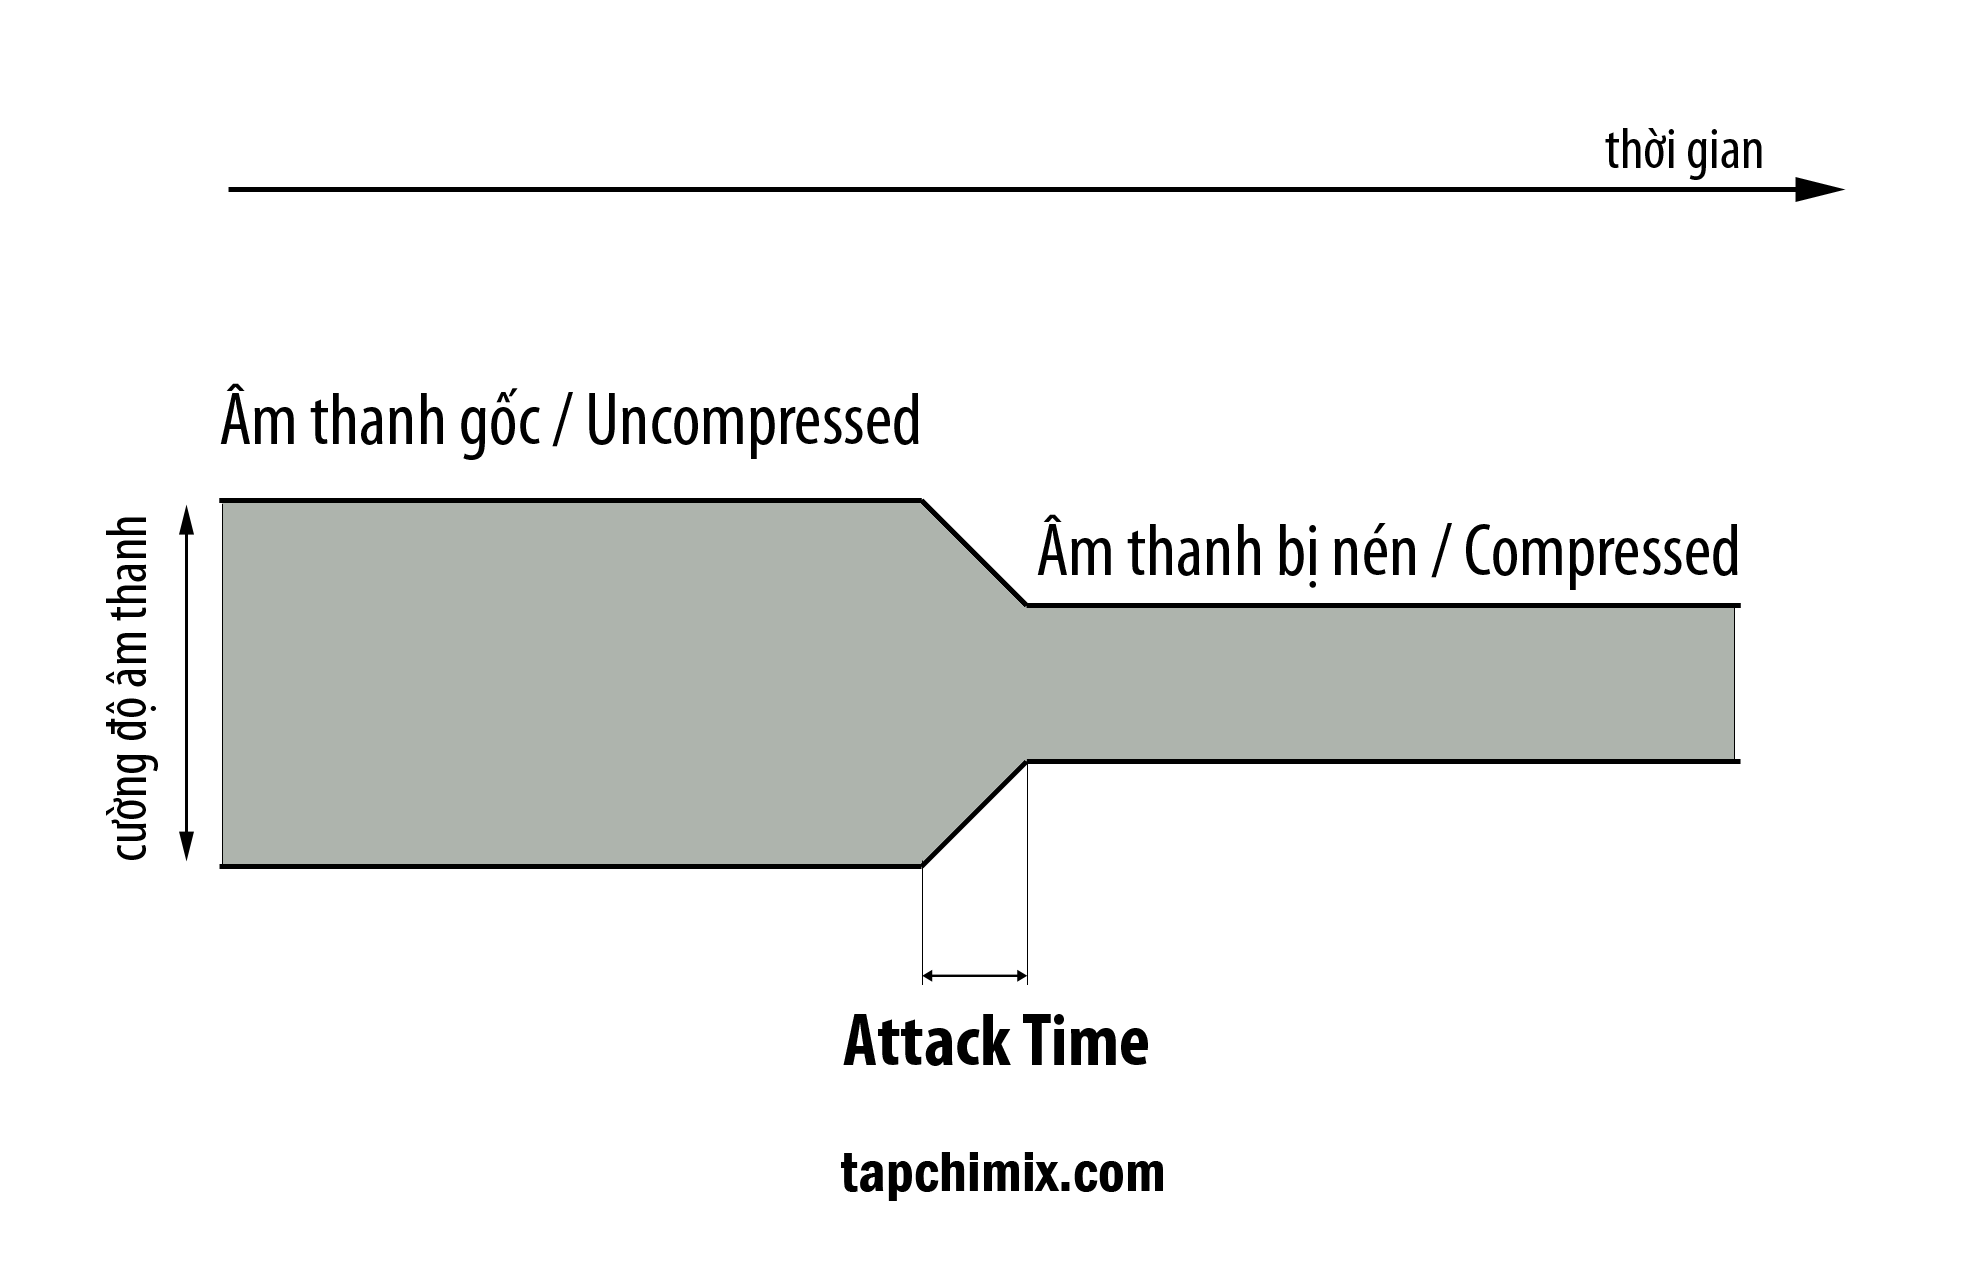 Attack Time: Rất khó nghe ra nếu bạn chưa có kinh nghiệm